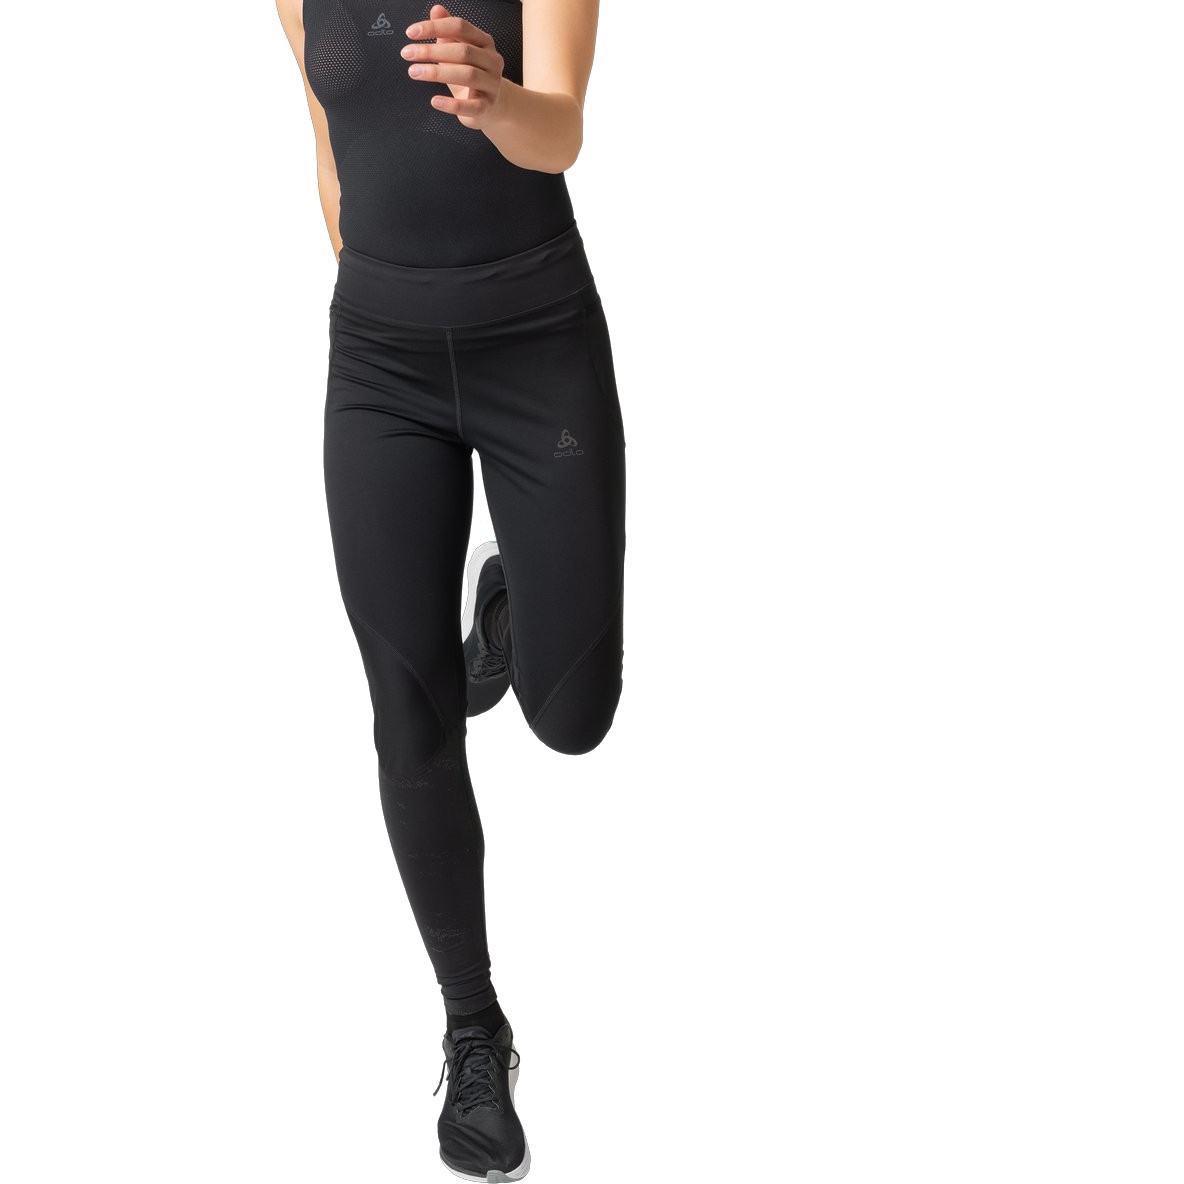 Produktbild von Odlo Zeroweight Warm Reflect Lauf-Tights Damen - schwarz